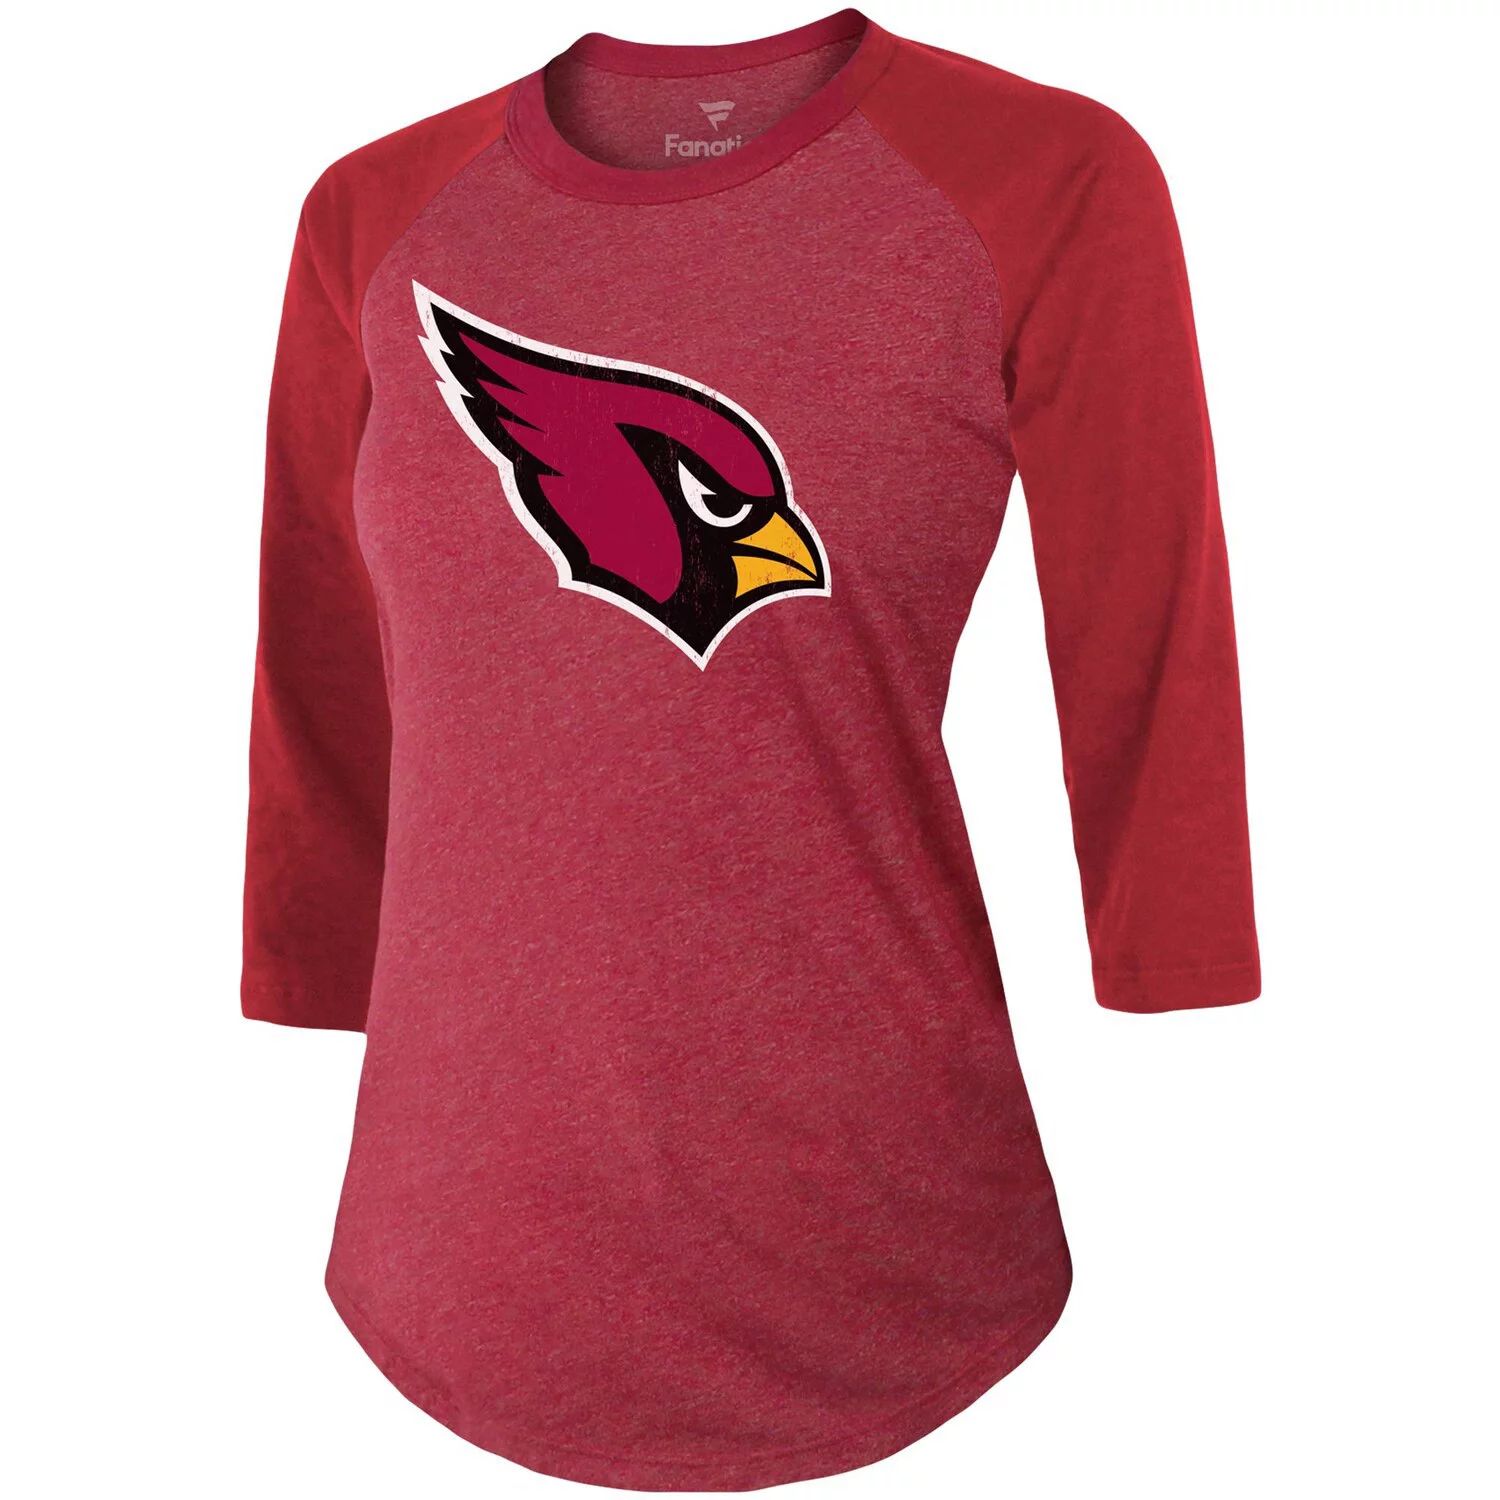 Женская футболка Fanatics с фирменным логотипом Kyler Murray Cardinal Arizona Cardinals, имя и номер игрока, футболка тройного реглан с рукавами 3/4 Majestic цена и фото